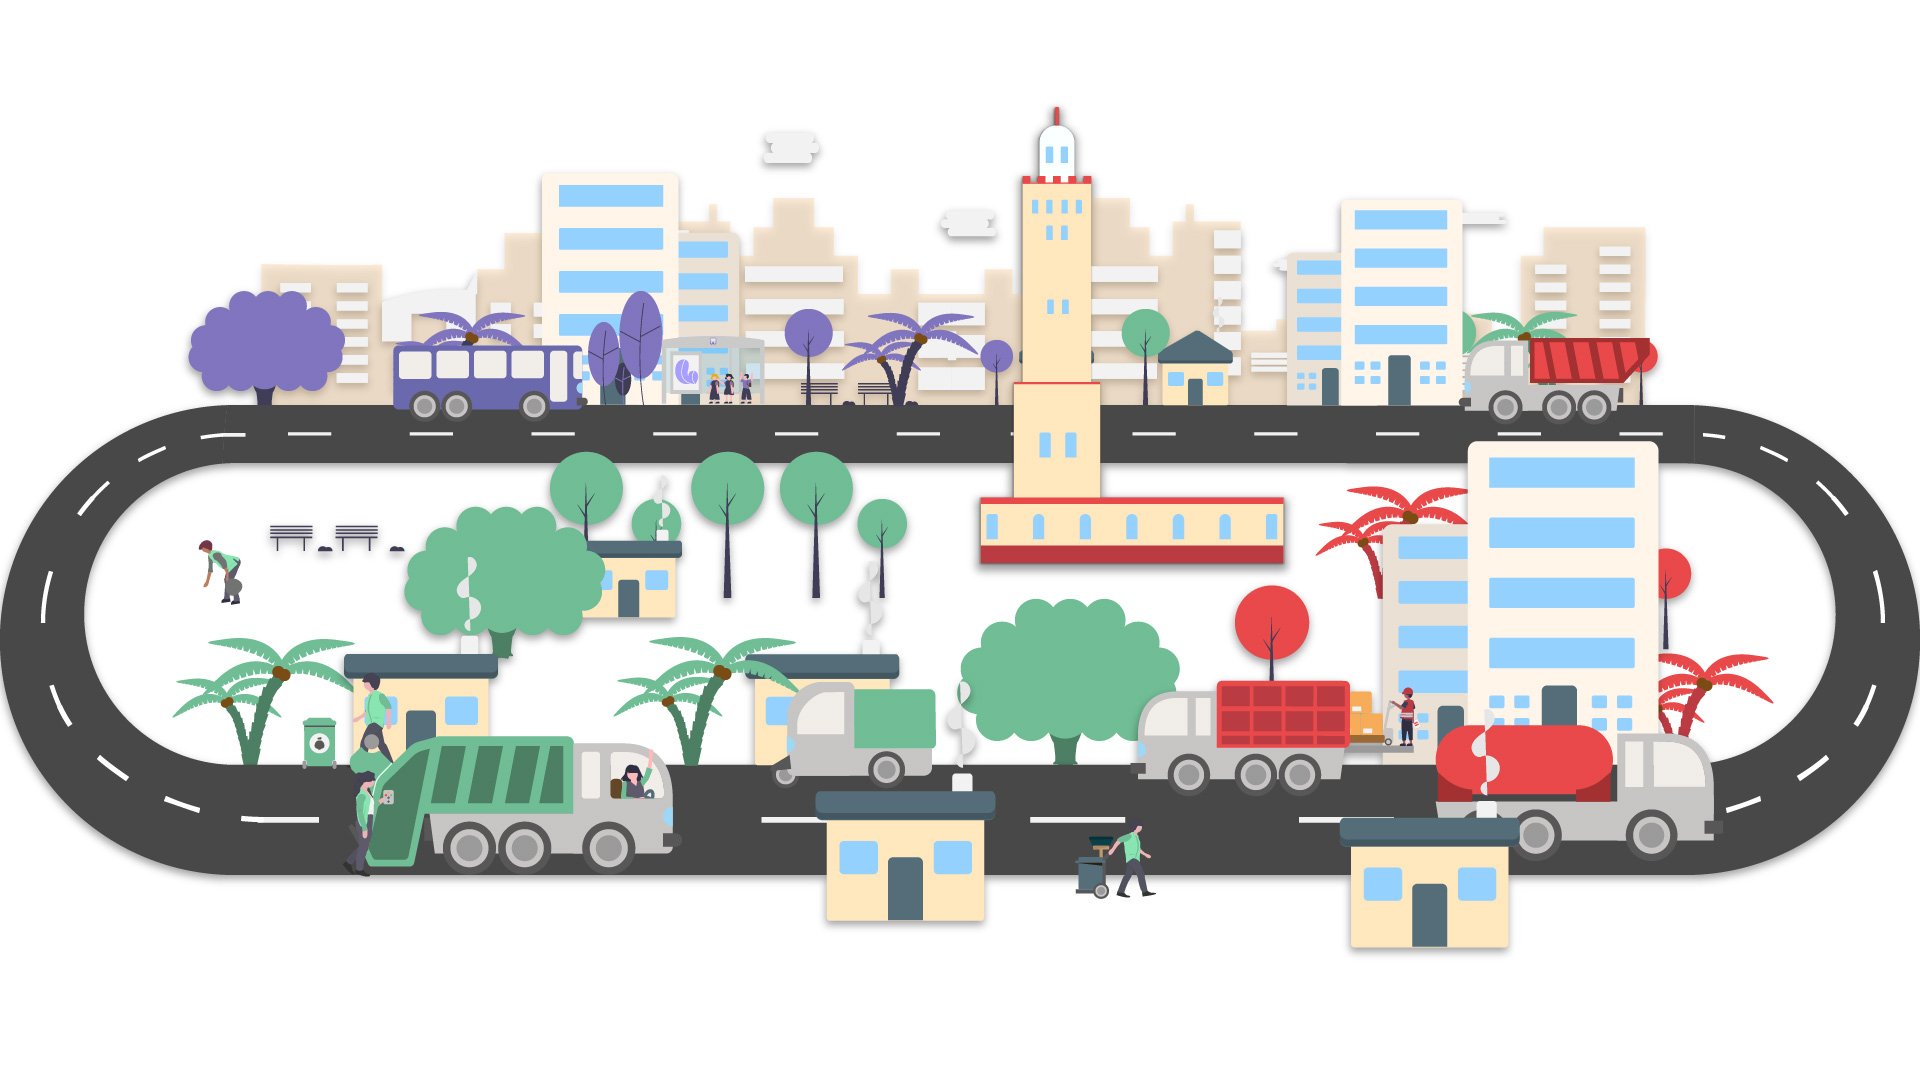 Sabatier Géolocalisation, filiale de Simpliciti a été imaginée pour répondre d’une manière globale aux enjeux des Smart Cities.